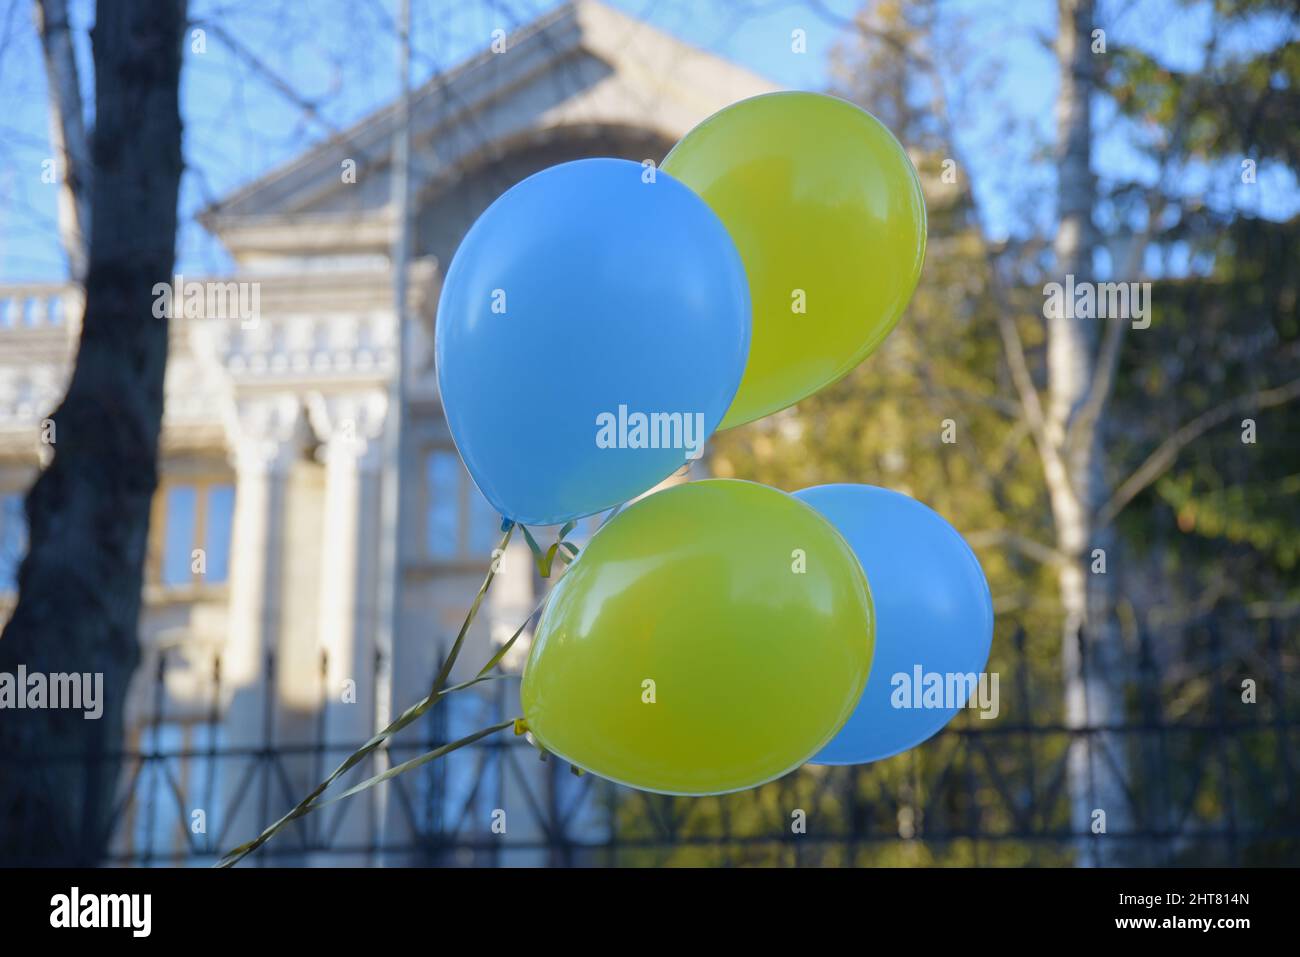 Helsinki, Finnland - 27. Februar 2022: Blaue und gelbe Luftballons in ukrainischen Farben vor der russischen Botschaft in Helsinki. Stockfoto